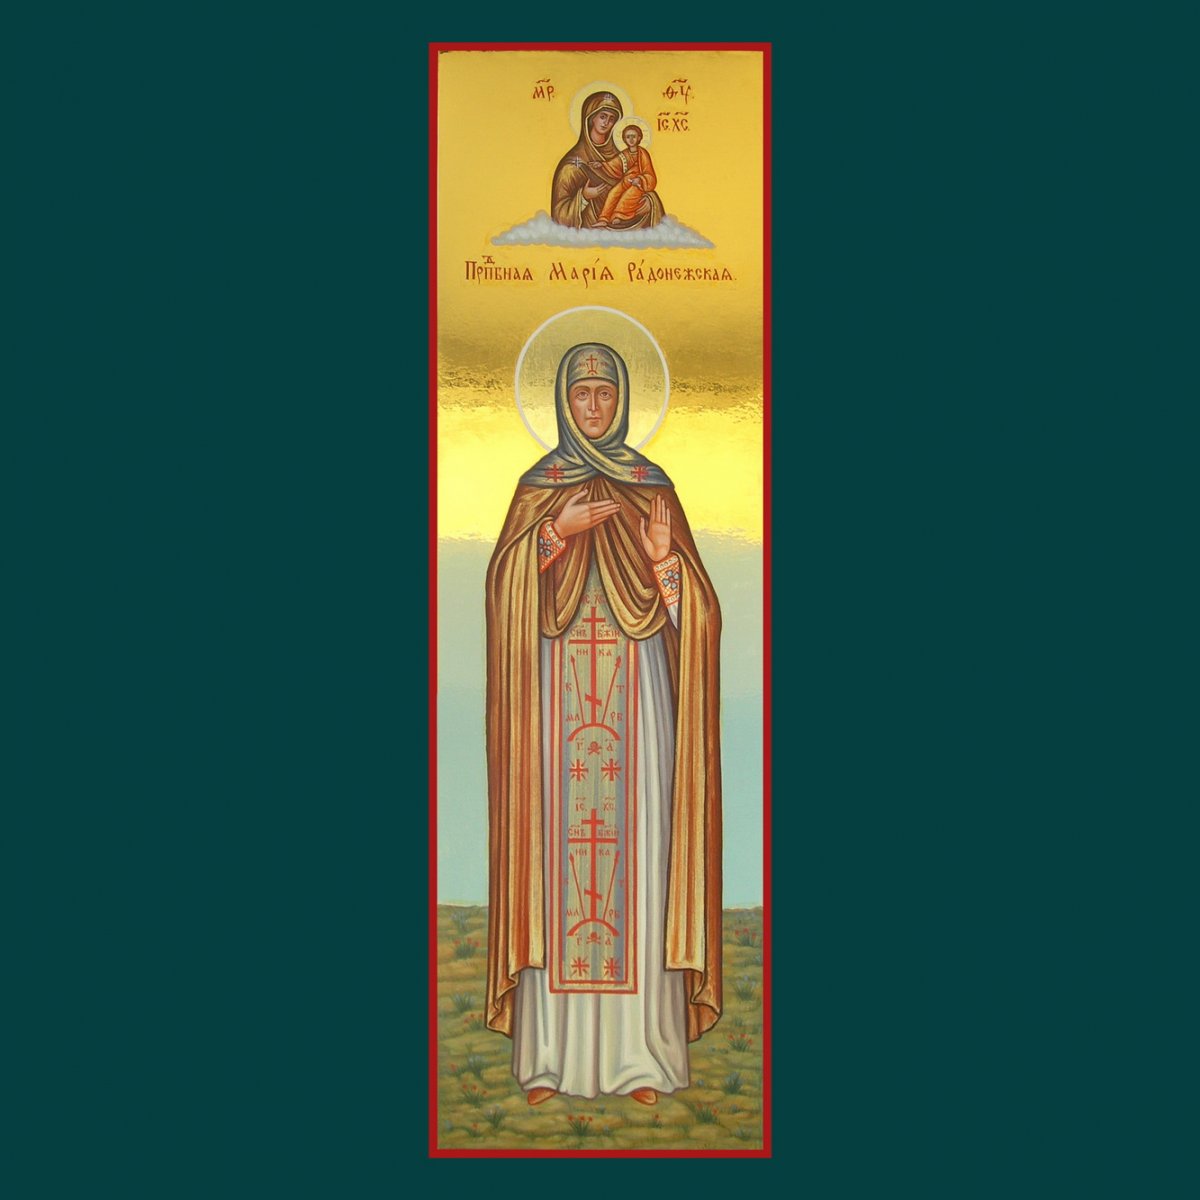 Образ преподобной Марии Радонежской